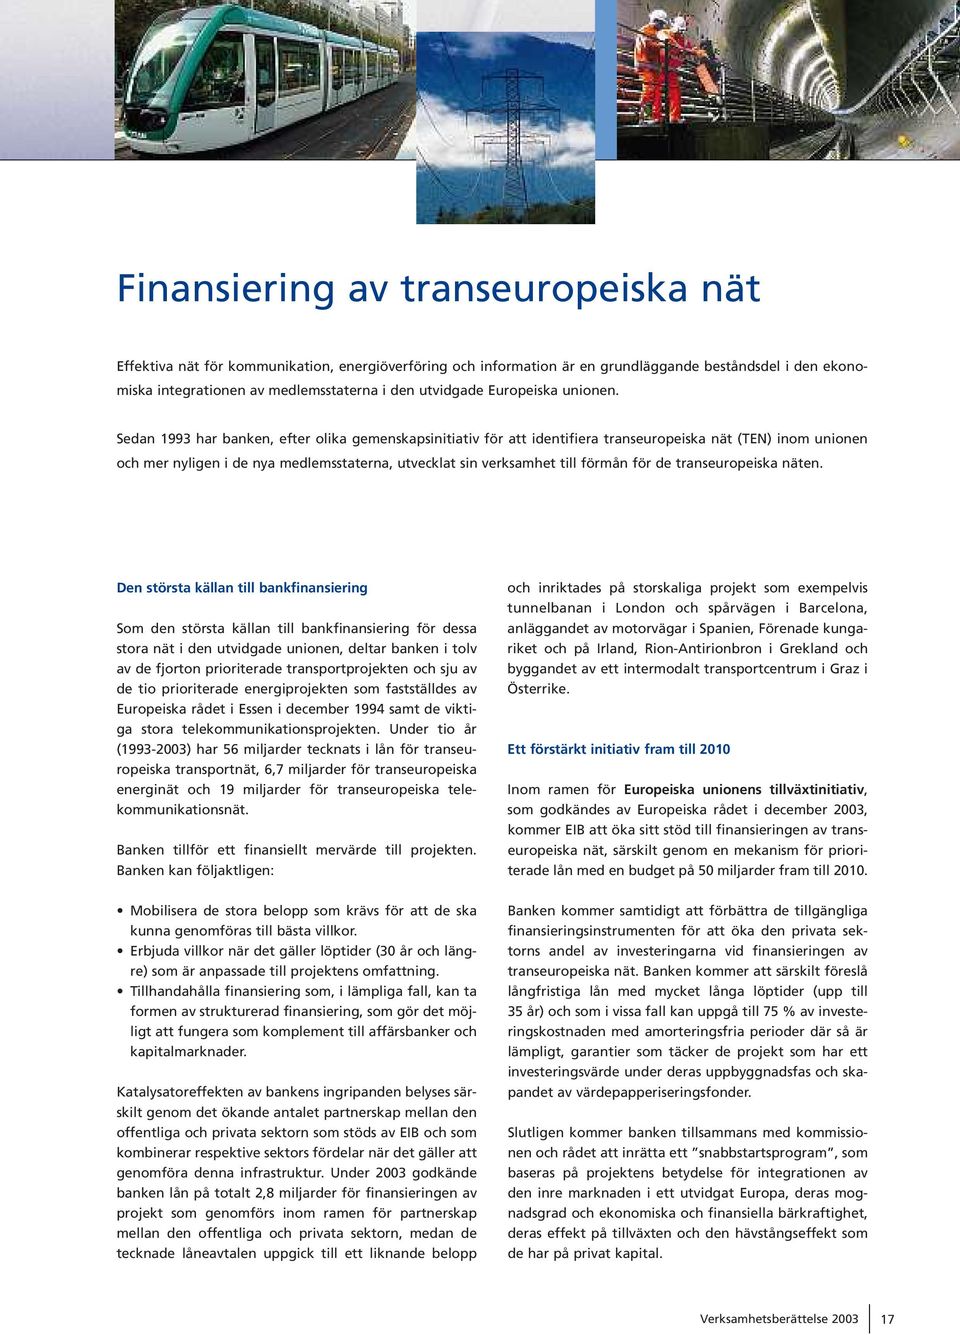 Sedan 1993 har banken, efter olika gemenskapsinitiativ fö r att identifiera transeuropeiska nä t (TEN) inom unionen och mer nyligen i de nya medlemsstaterna, utvecklat sin verksamhet till fö rmå n fö